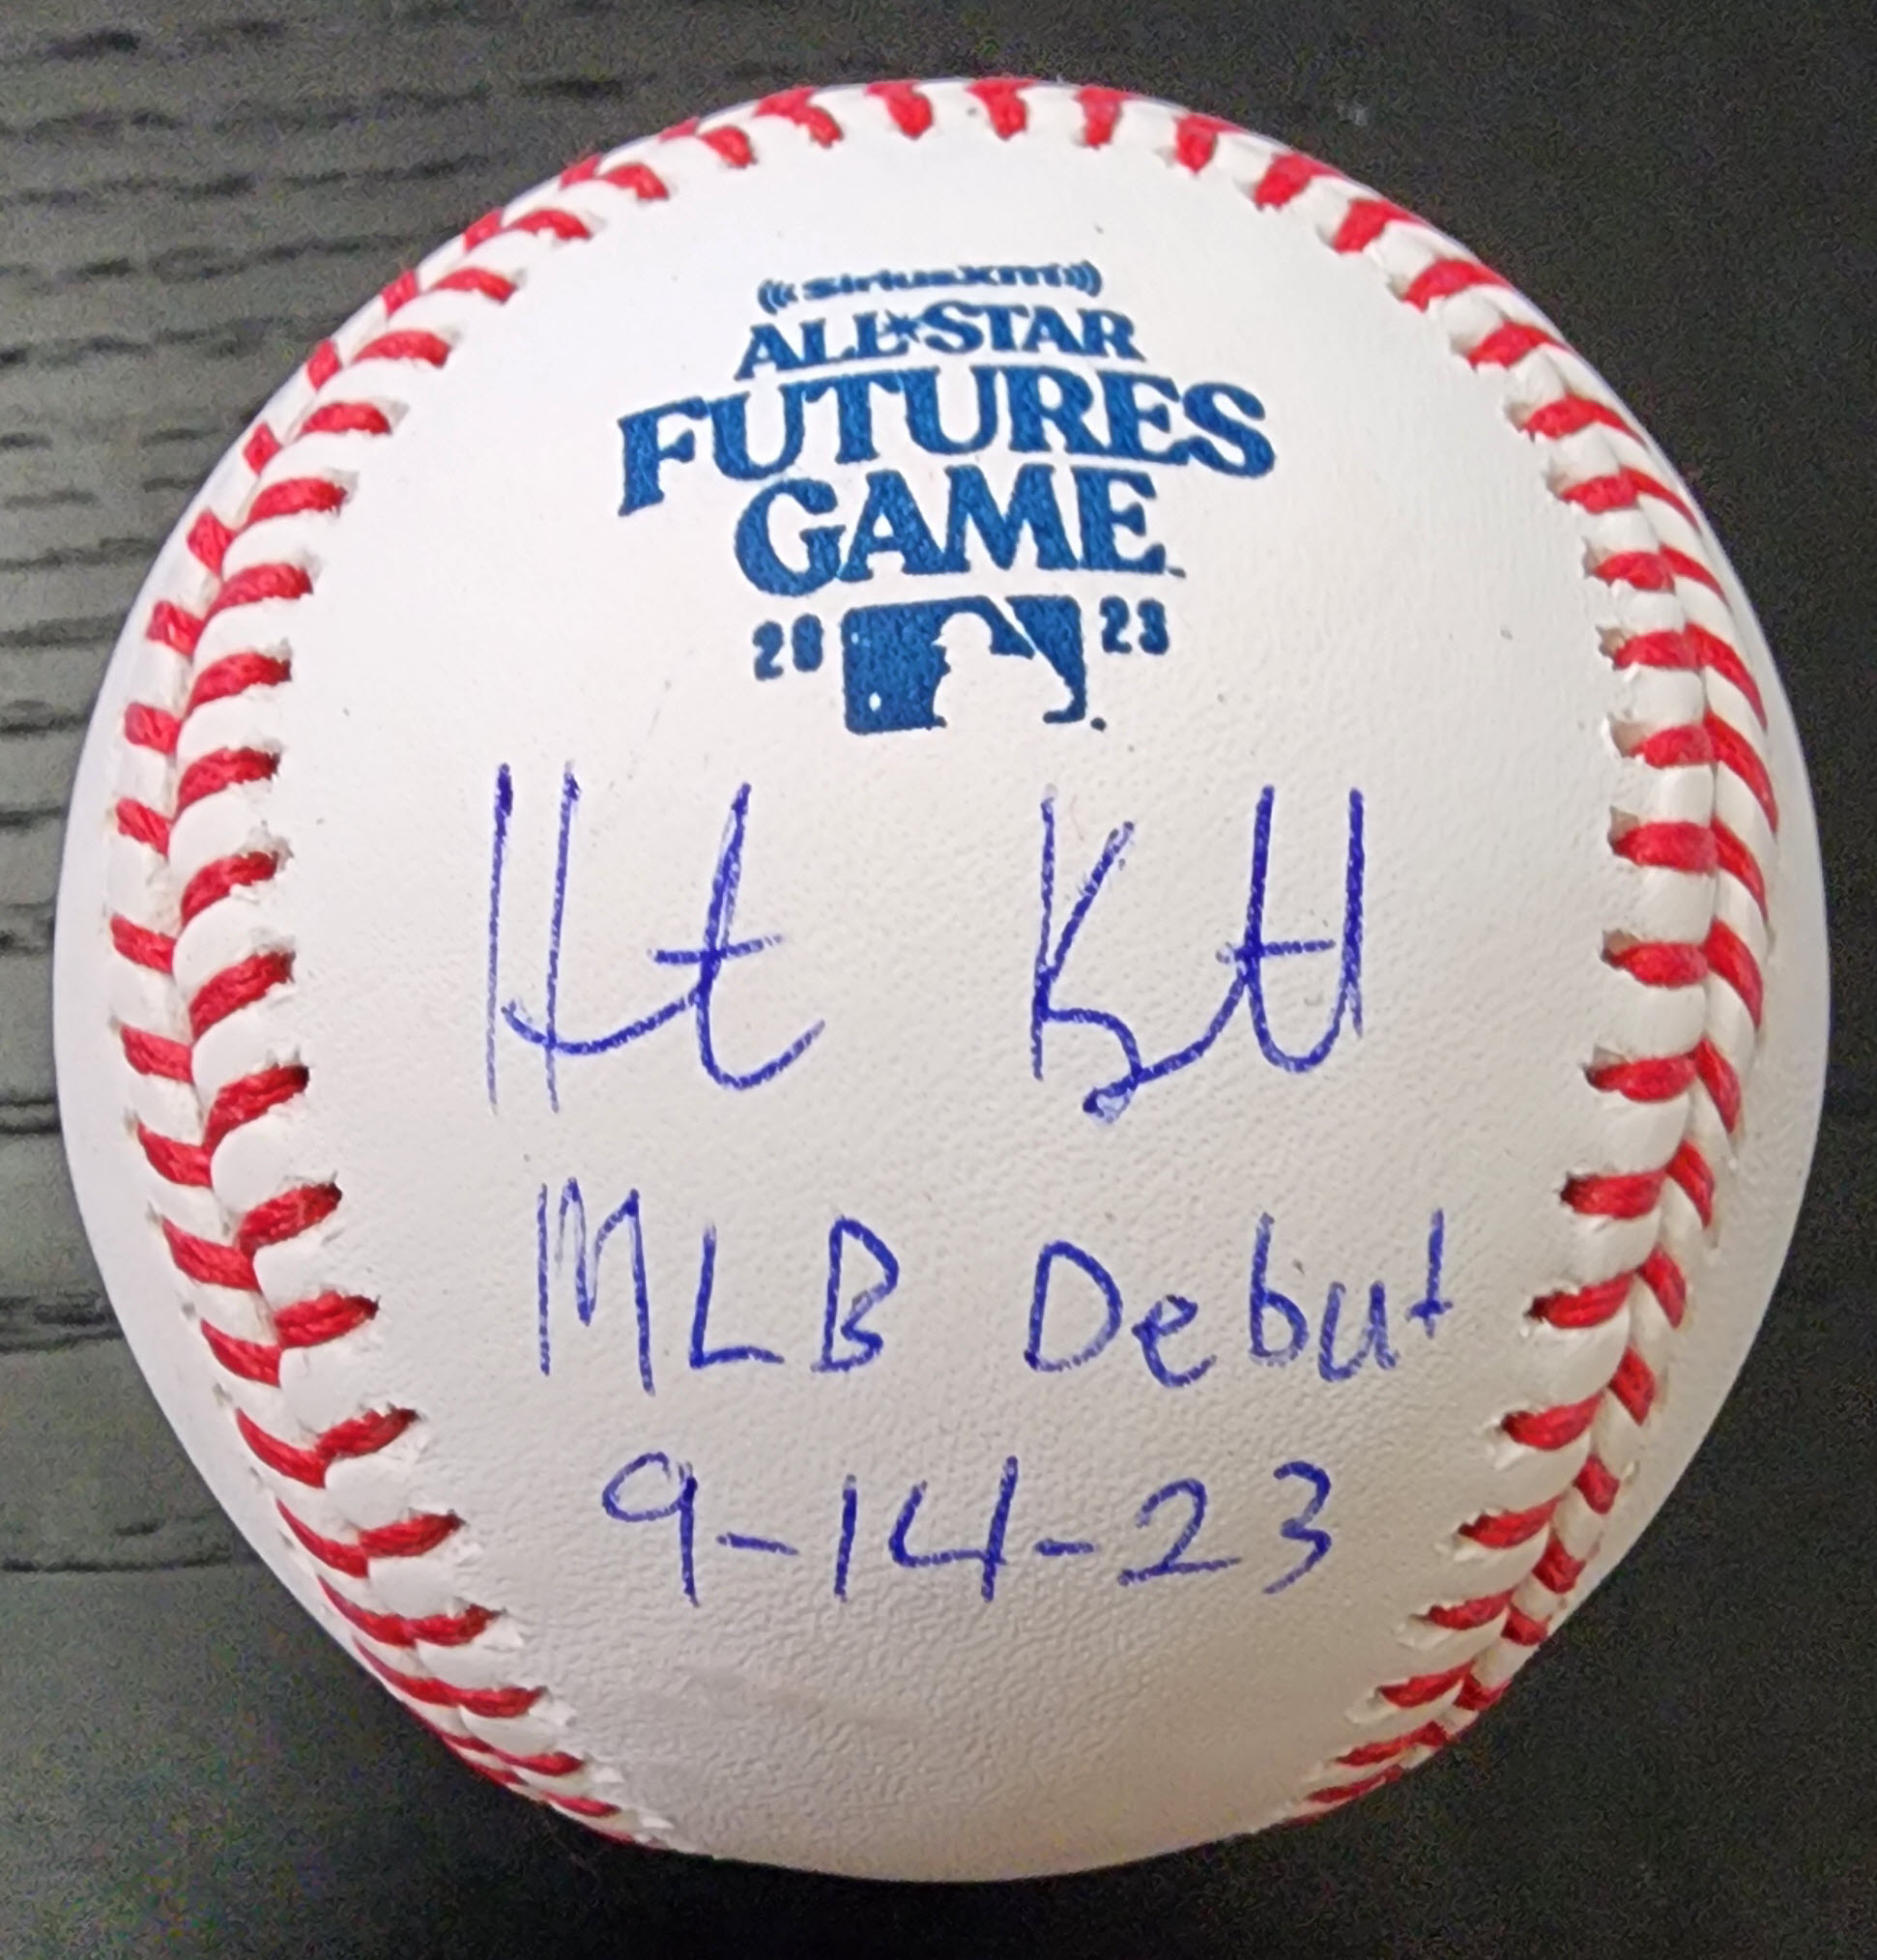 Heston Kjerstad Autographed Futures Ball Inscribed MLB Debut 91423 v1